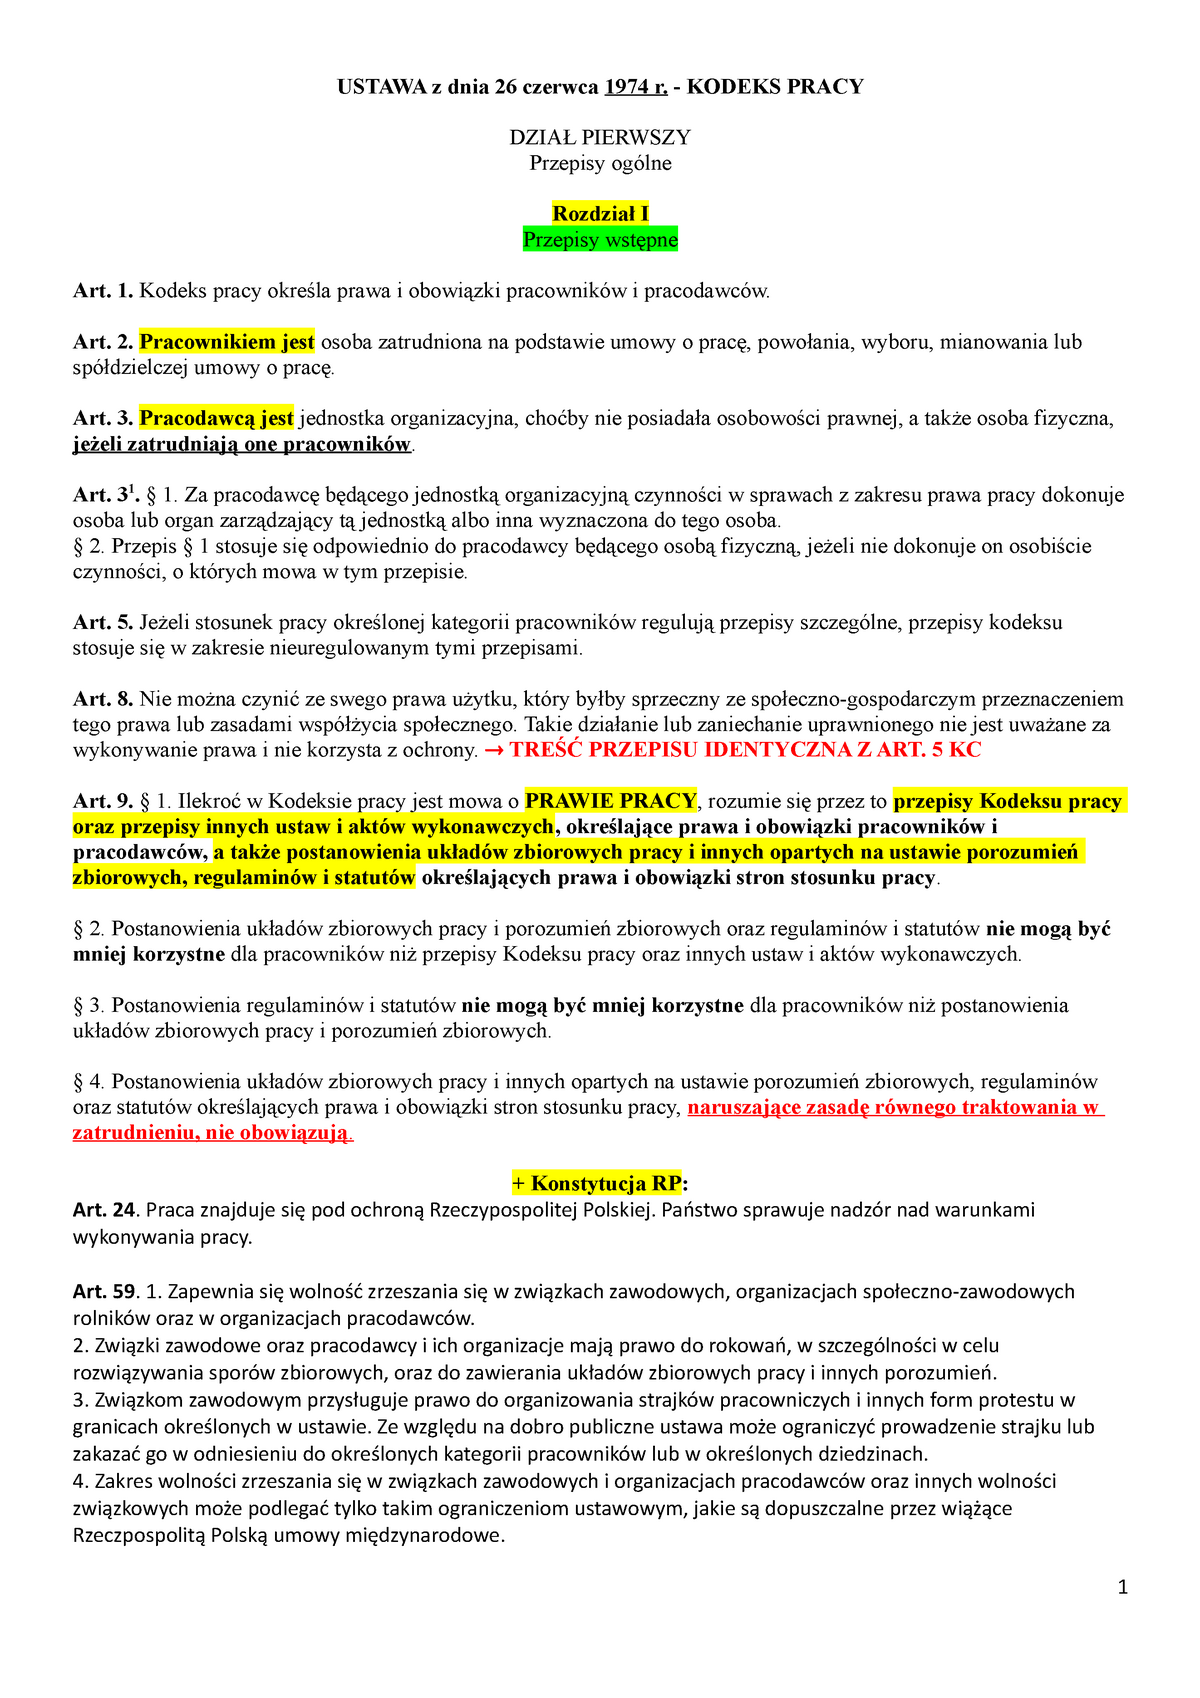 Art 3 Pkt 1 Ustawy Z Dnia 28 Listopada 2003 Kodeks pracy -OPRACOWANY - USTAWA z dnia 26 czerwca 1974 r. KODEKS